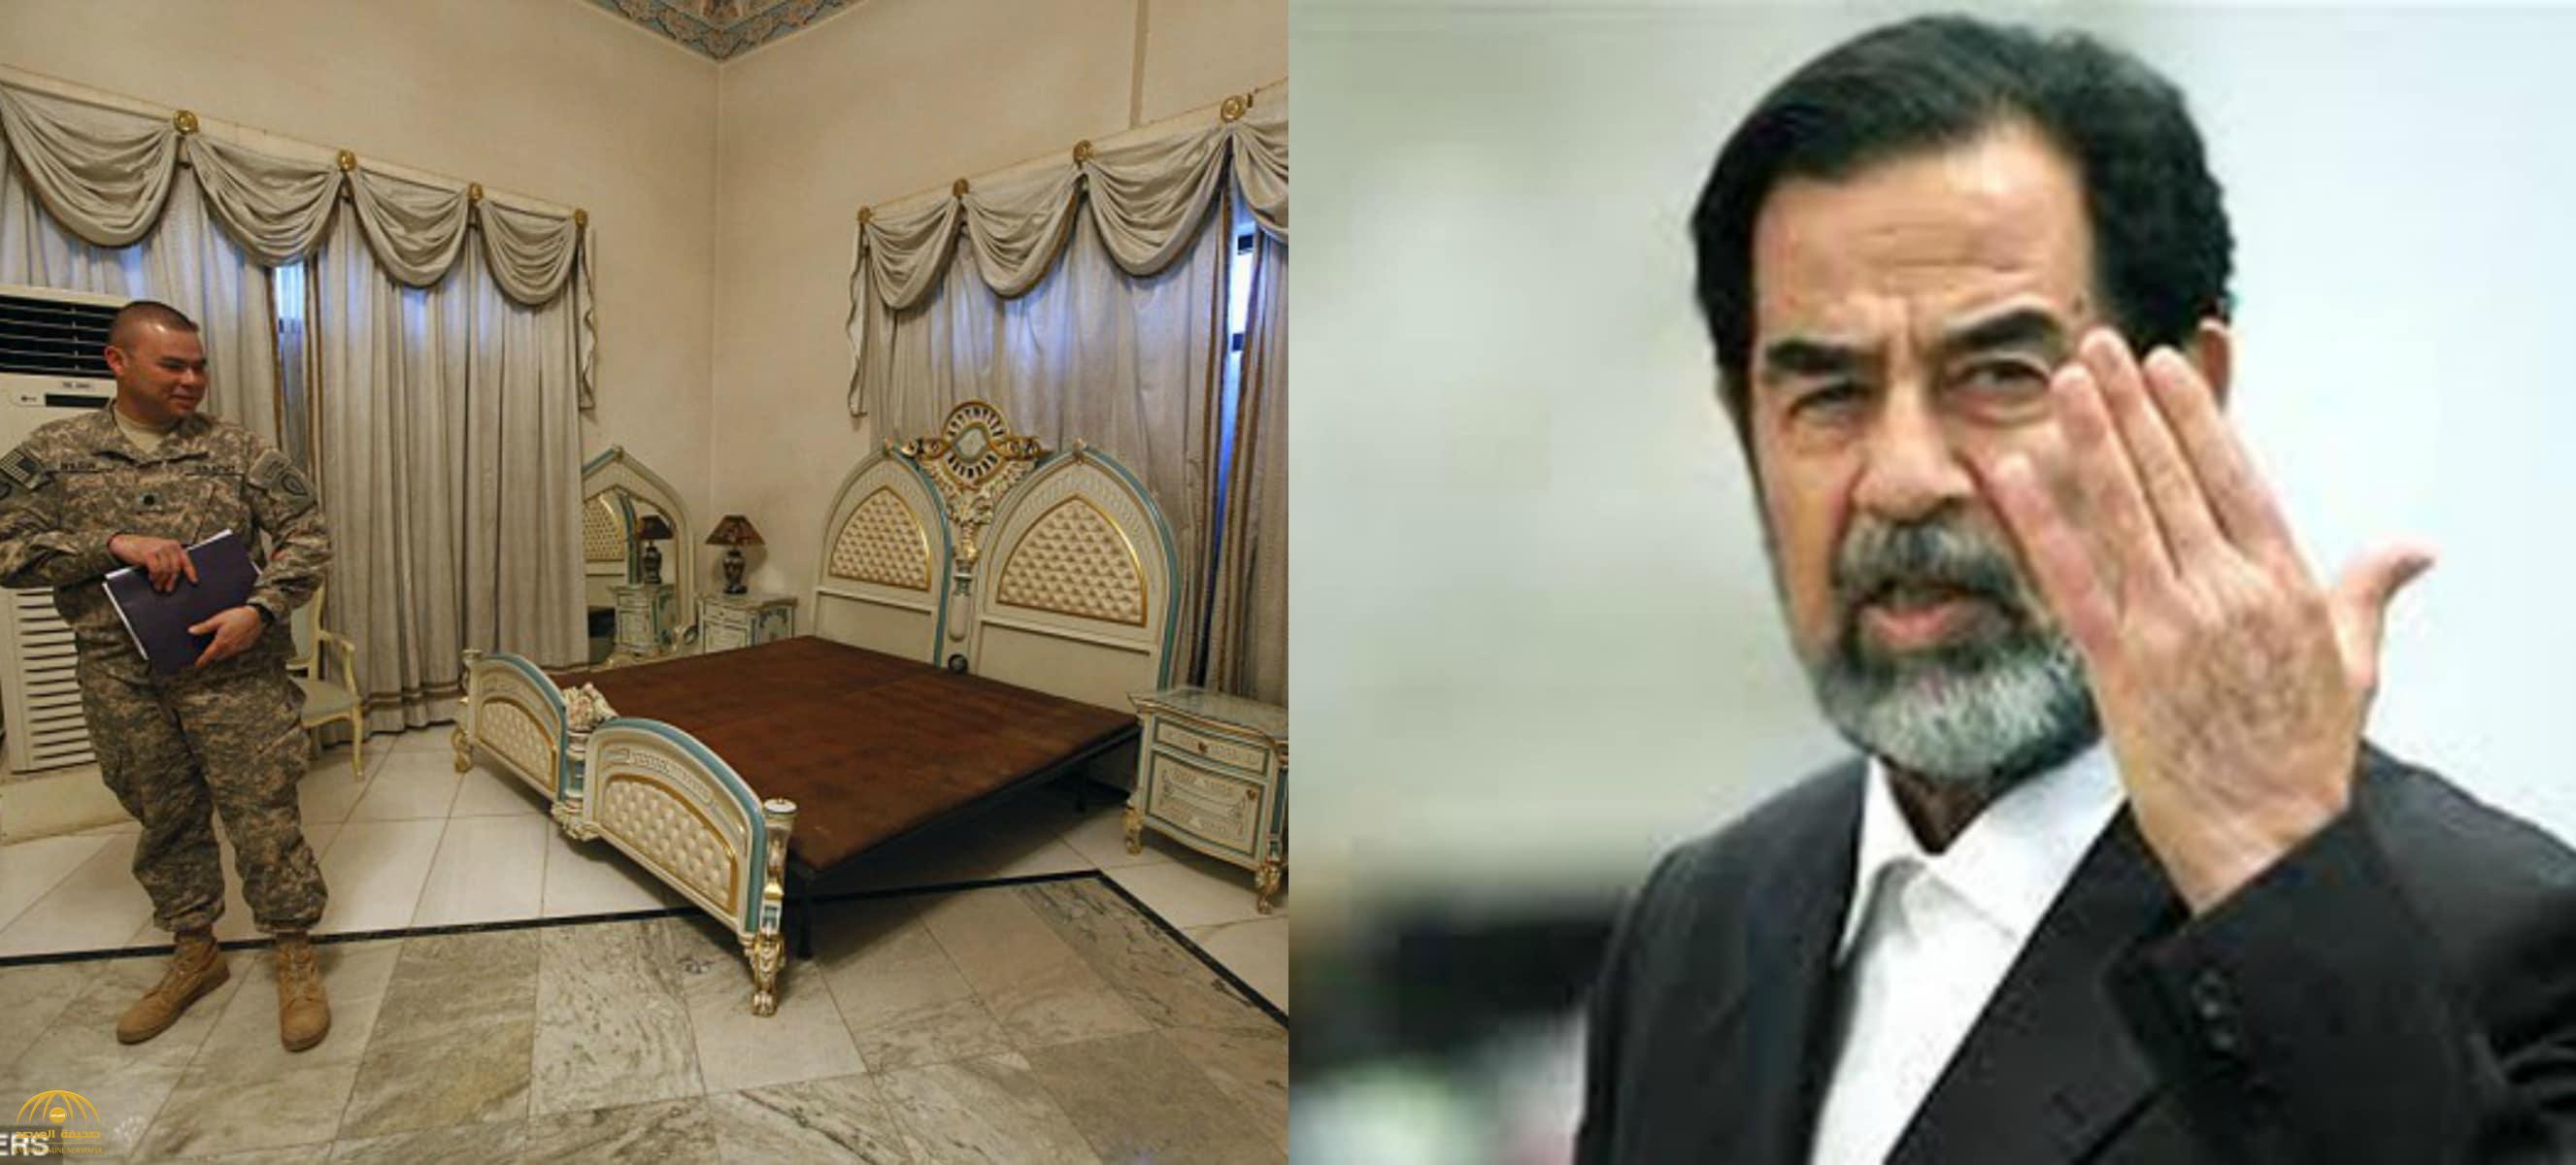 من هي الفنانة التي نامت على سرير صدام حسين!